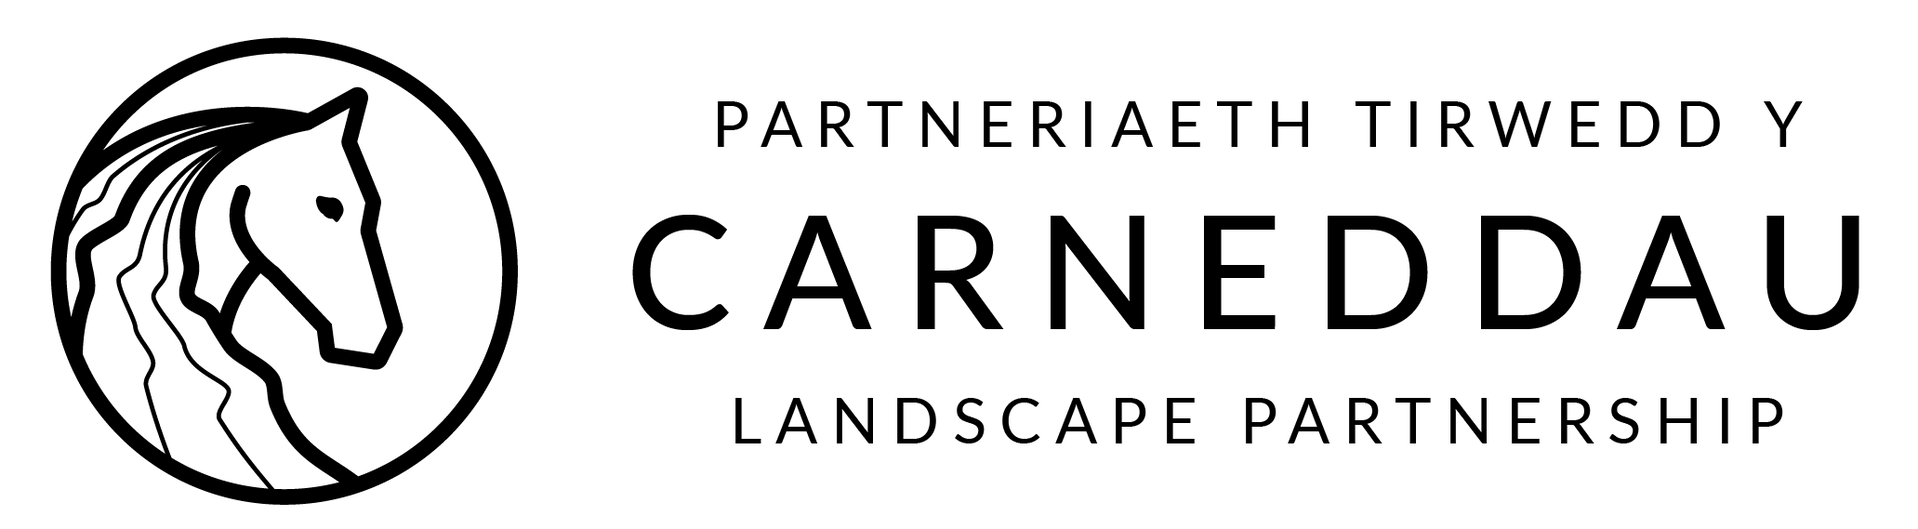 Logo Carneddau 